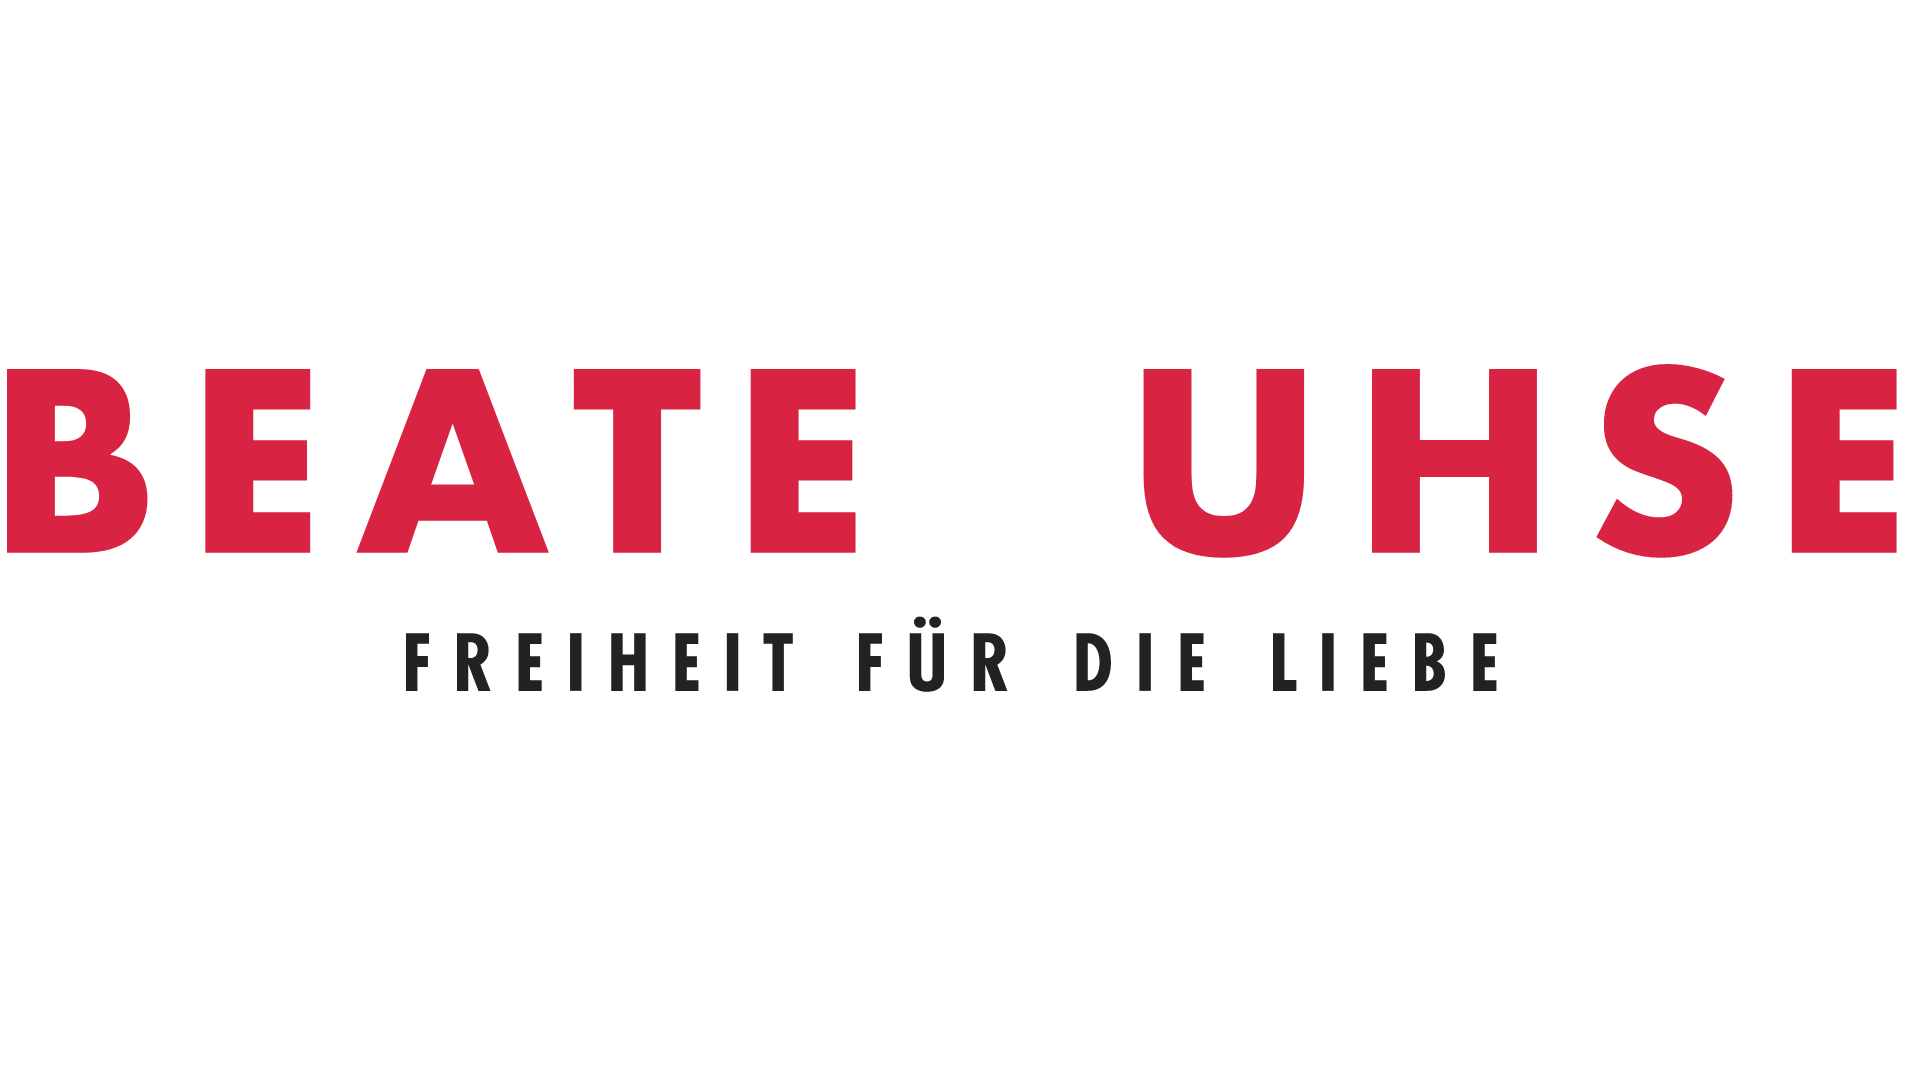 Beate-Uhse.com: 5 Euro mit Gutschein sparen